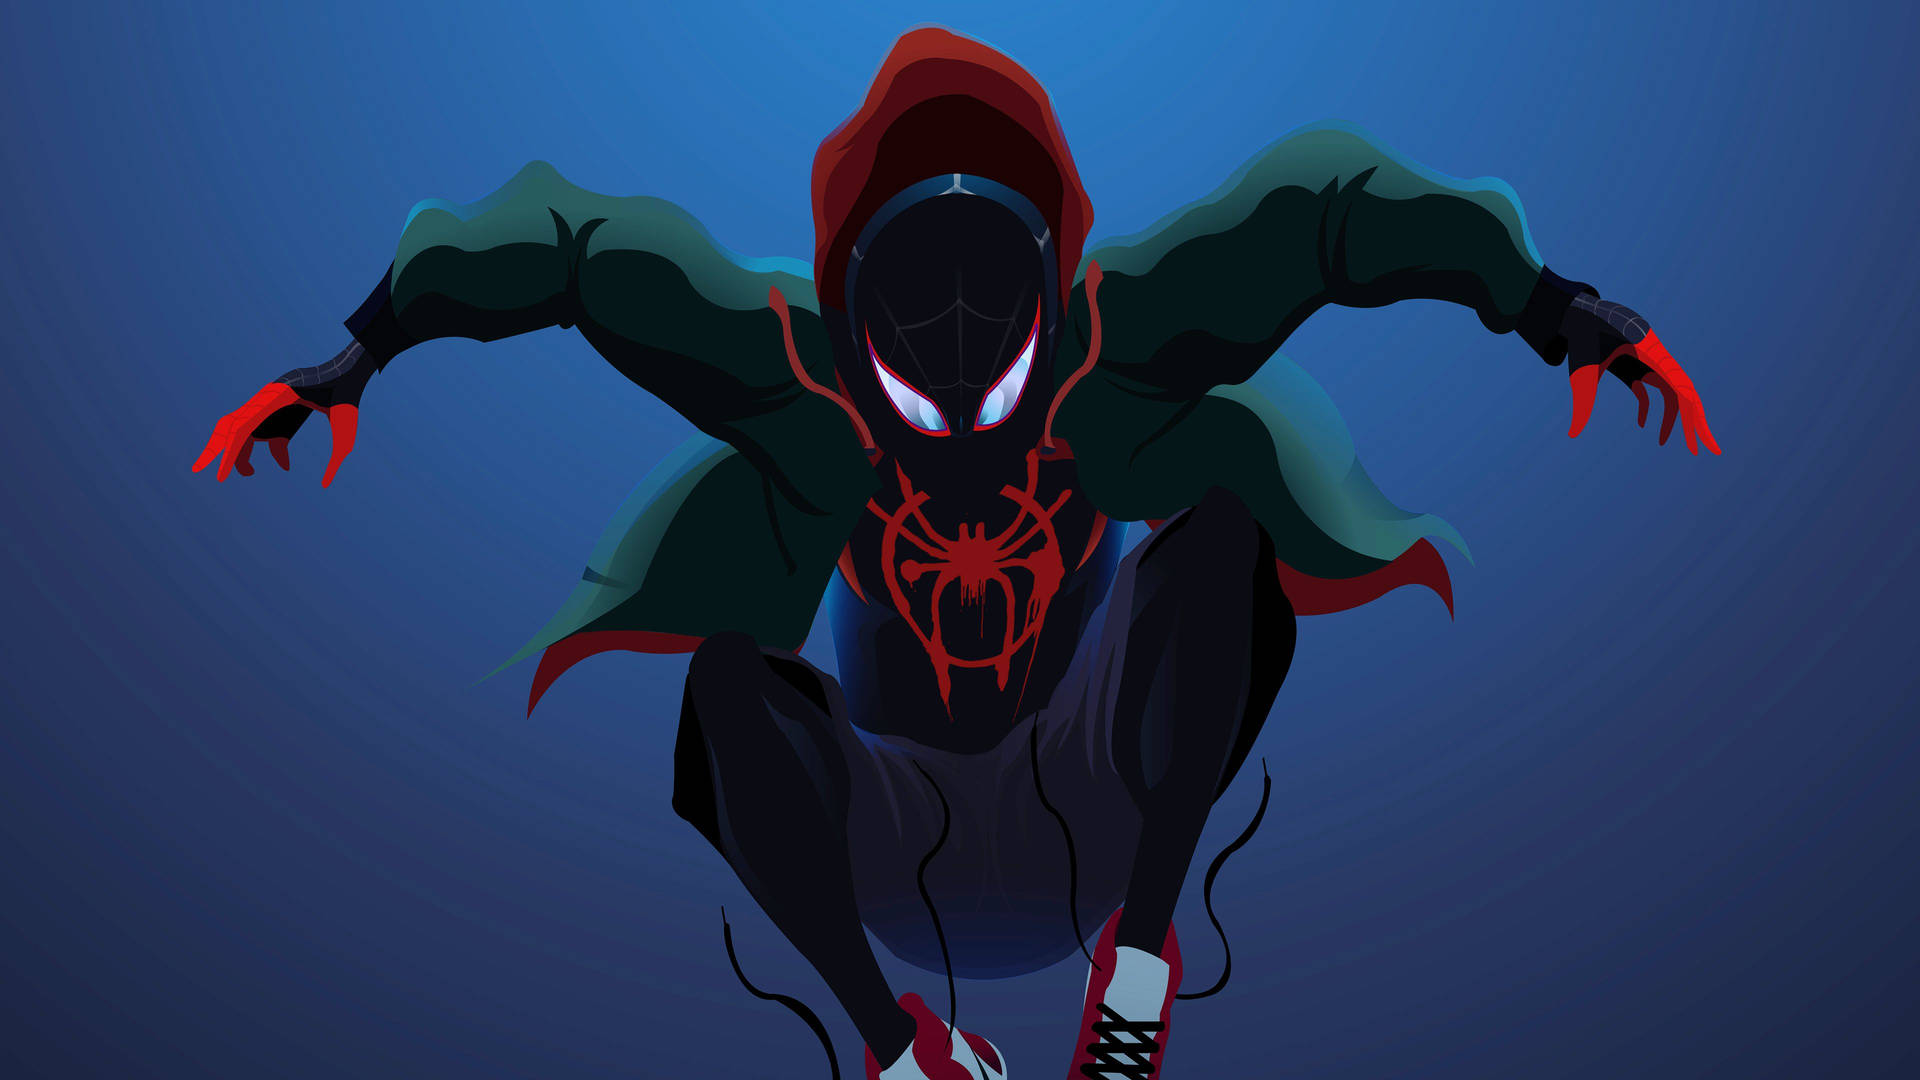 Spiderman Jumping Digital Art Wallpaper